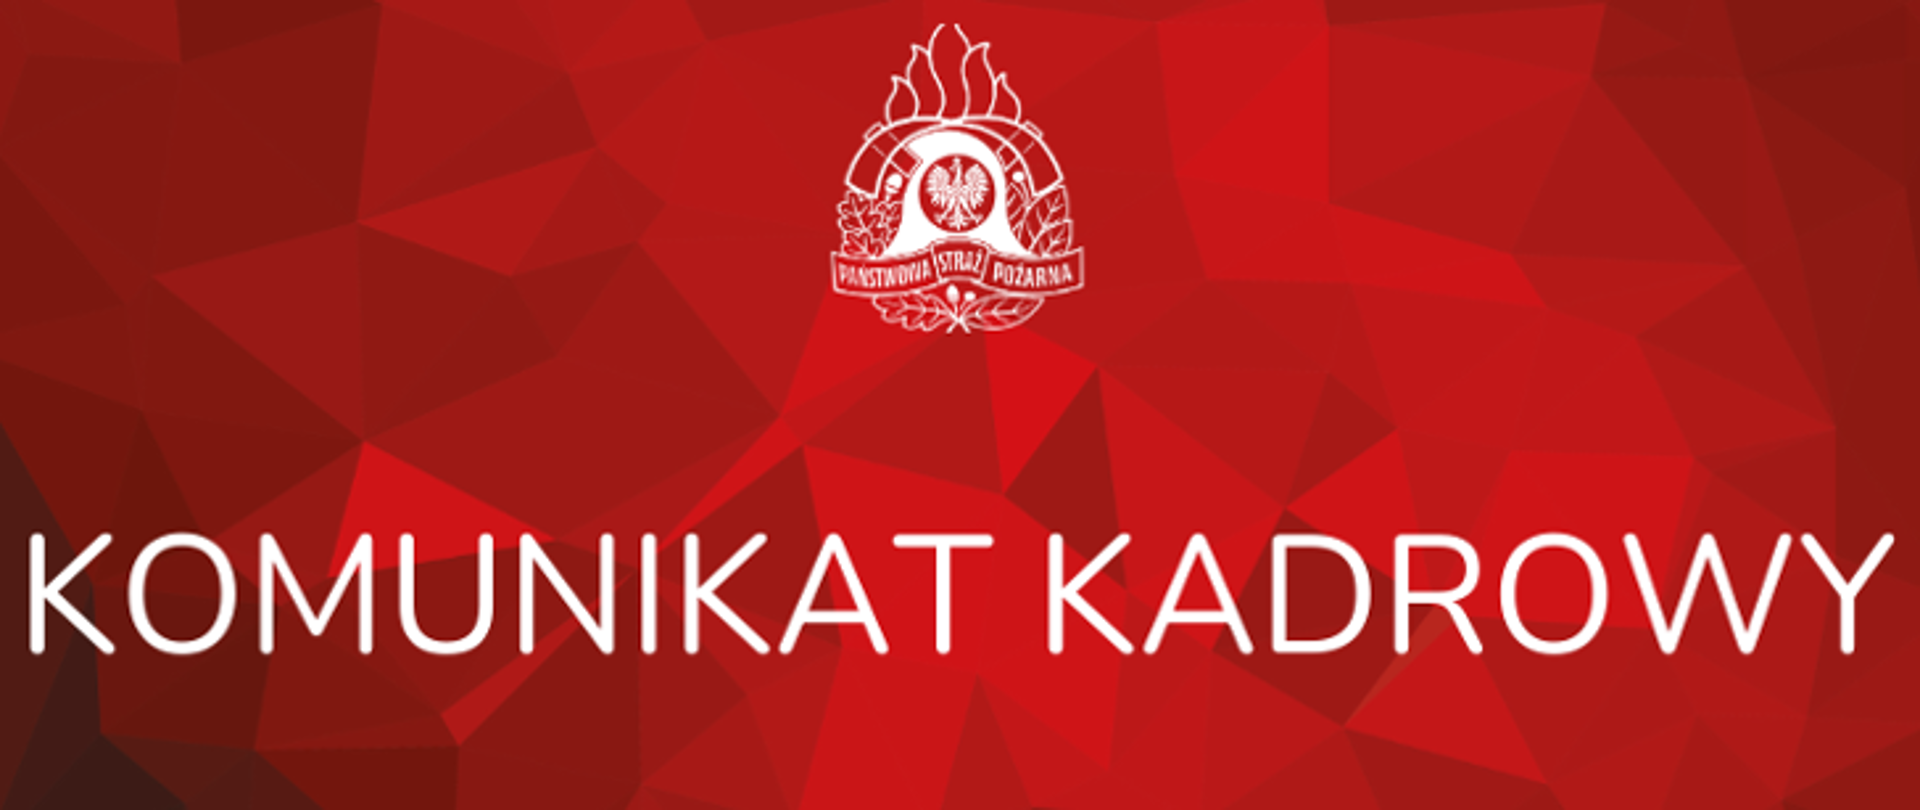 Komunikat Kadrowy na czerwonym tle i logo PSP